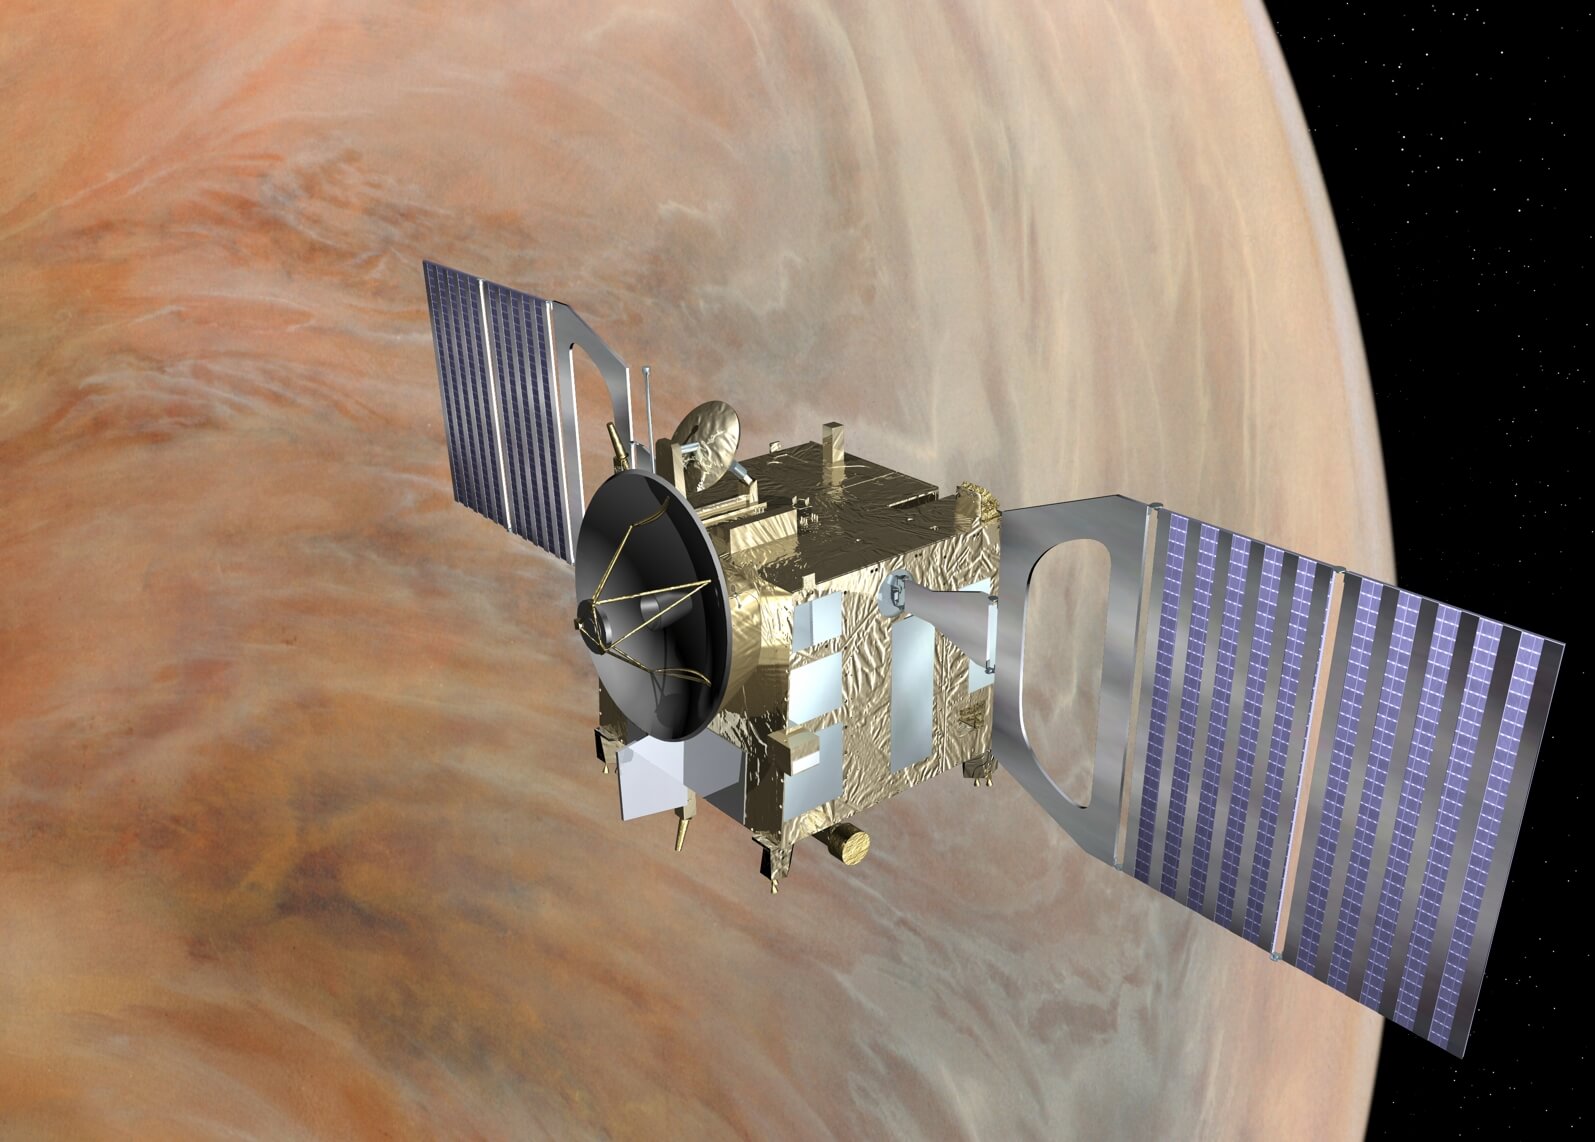 Venus Express. Figure: European Space Agency